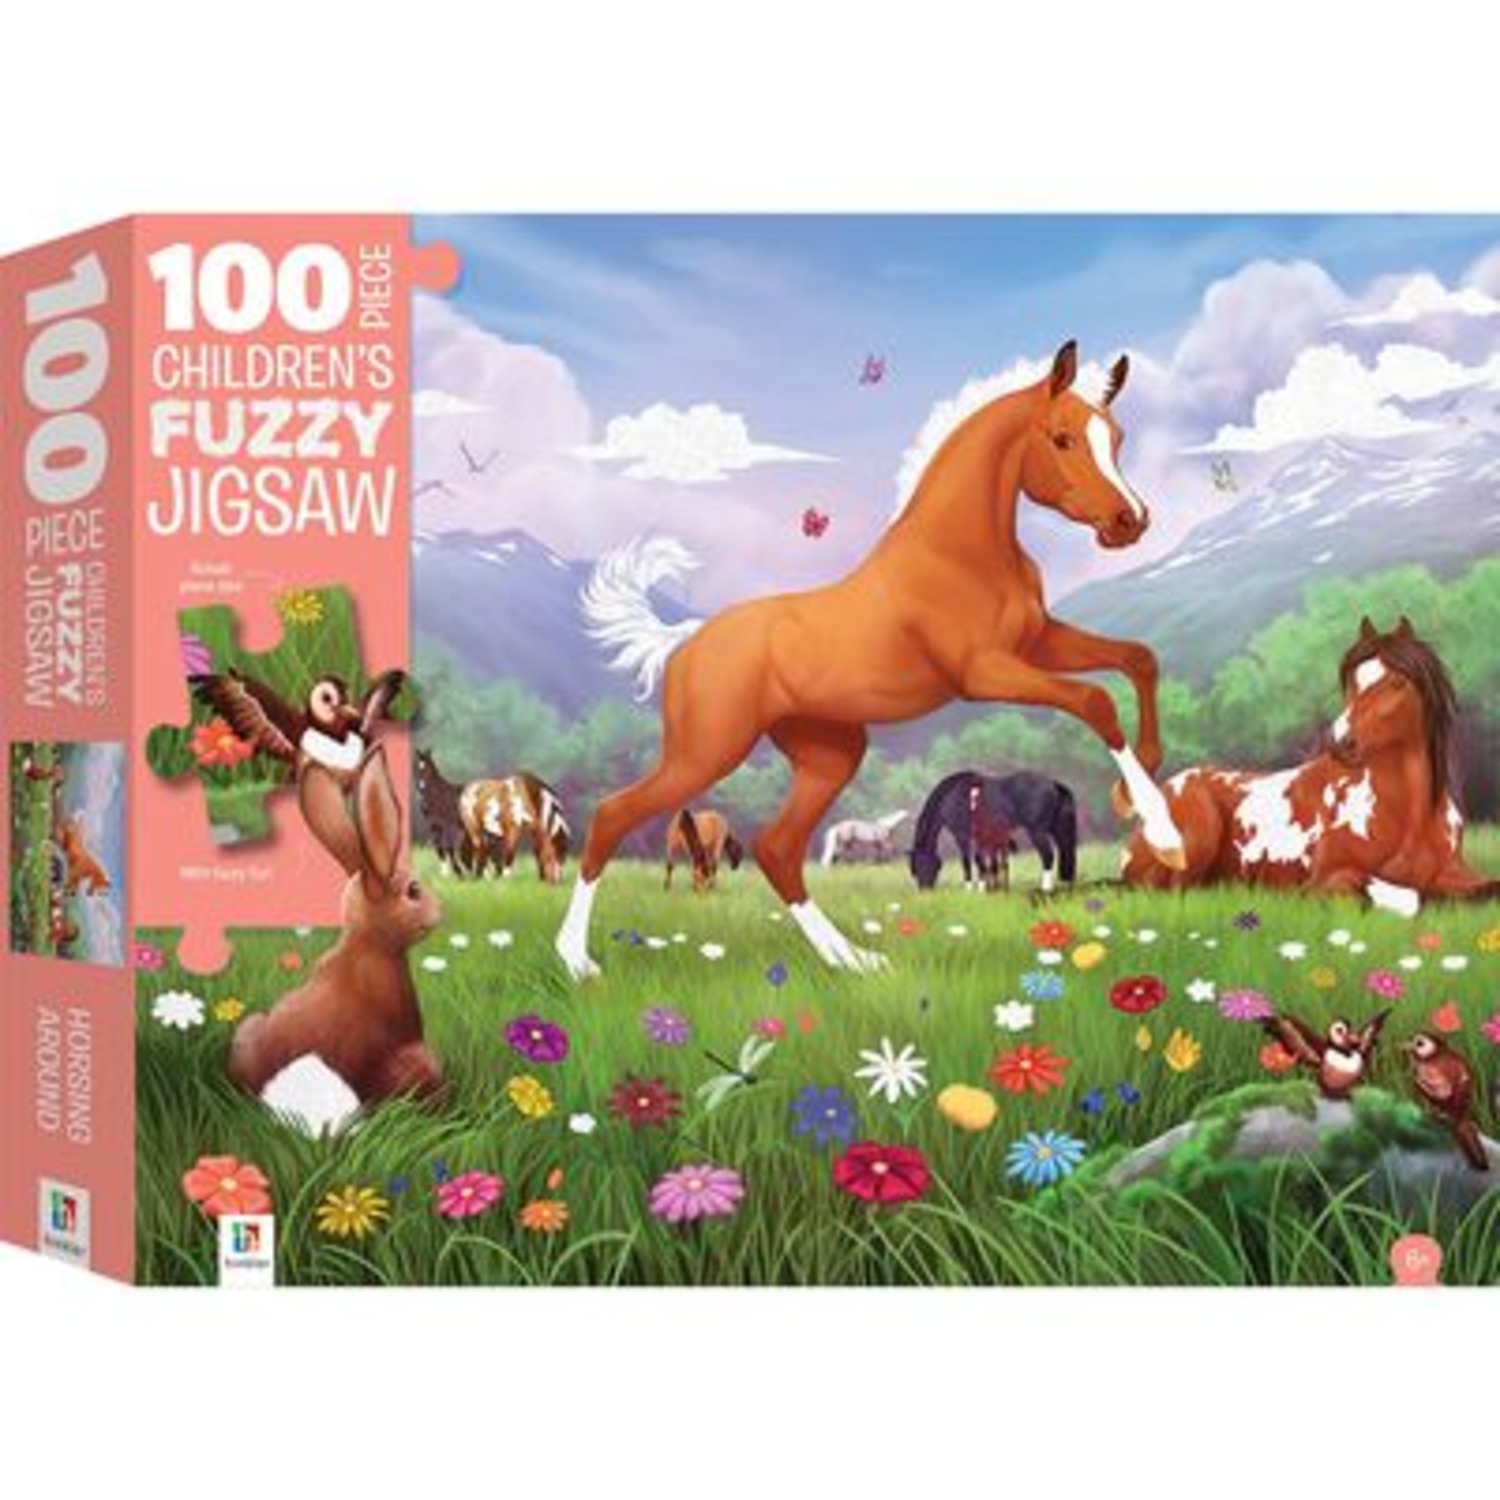 A 100-piece children's fuzzy jigsaw of Carrots, a mischievous foal.